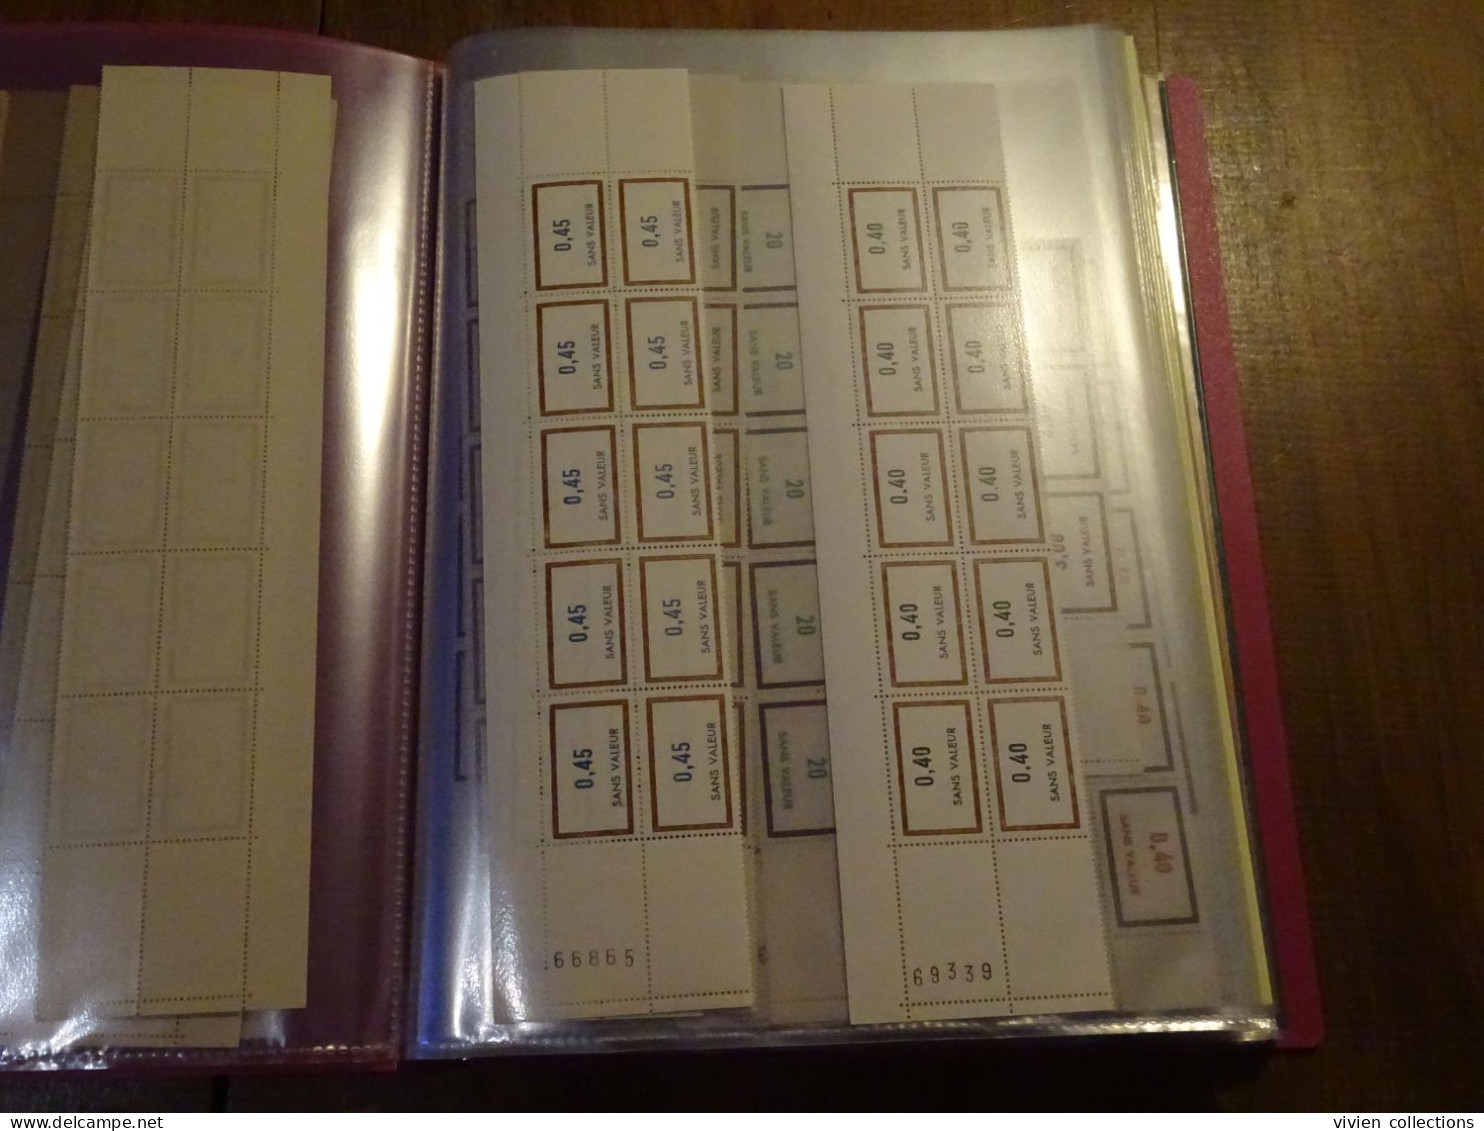 France cours d'instruction album 1502 fictifs dont feuilles, coins datés + 161 Palissy vignettes dont roulettes, carnets